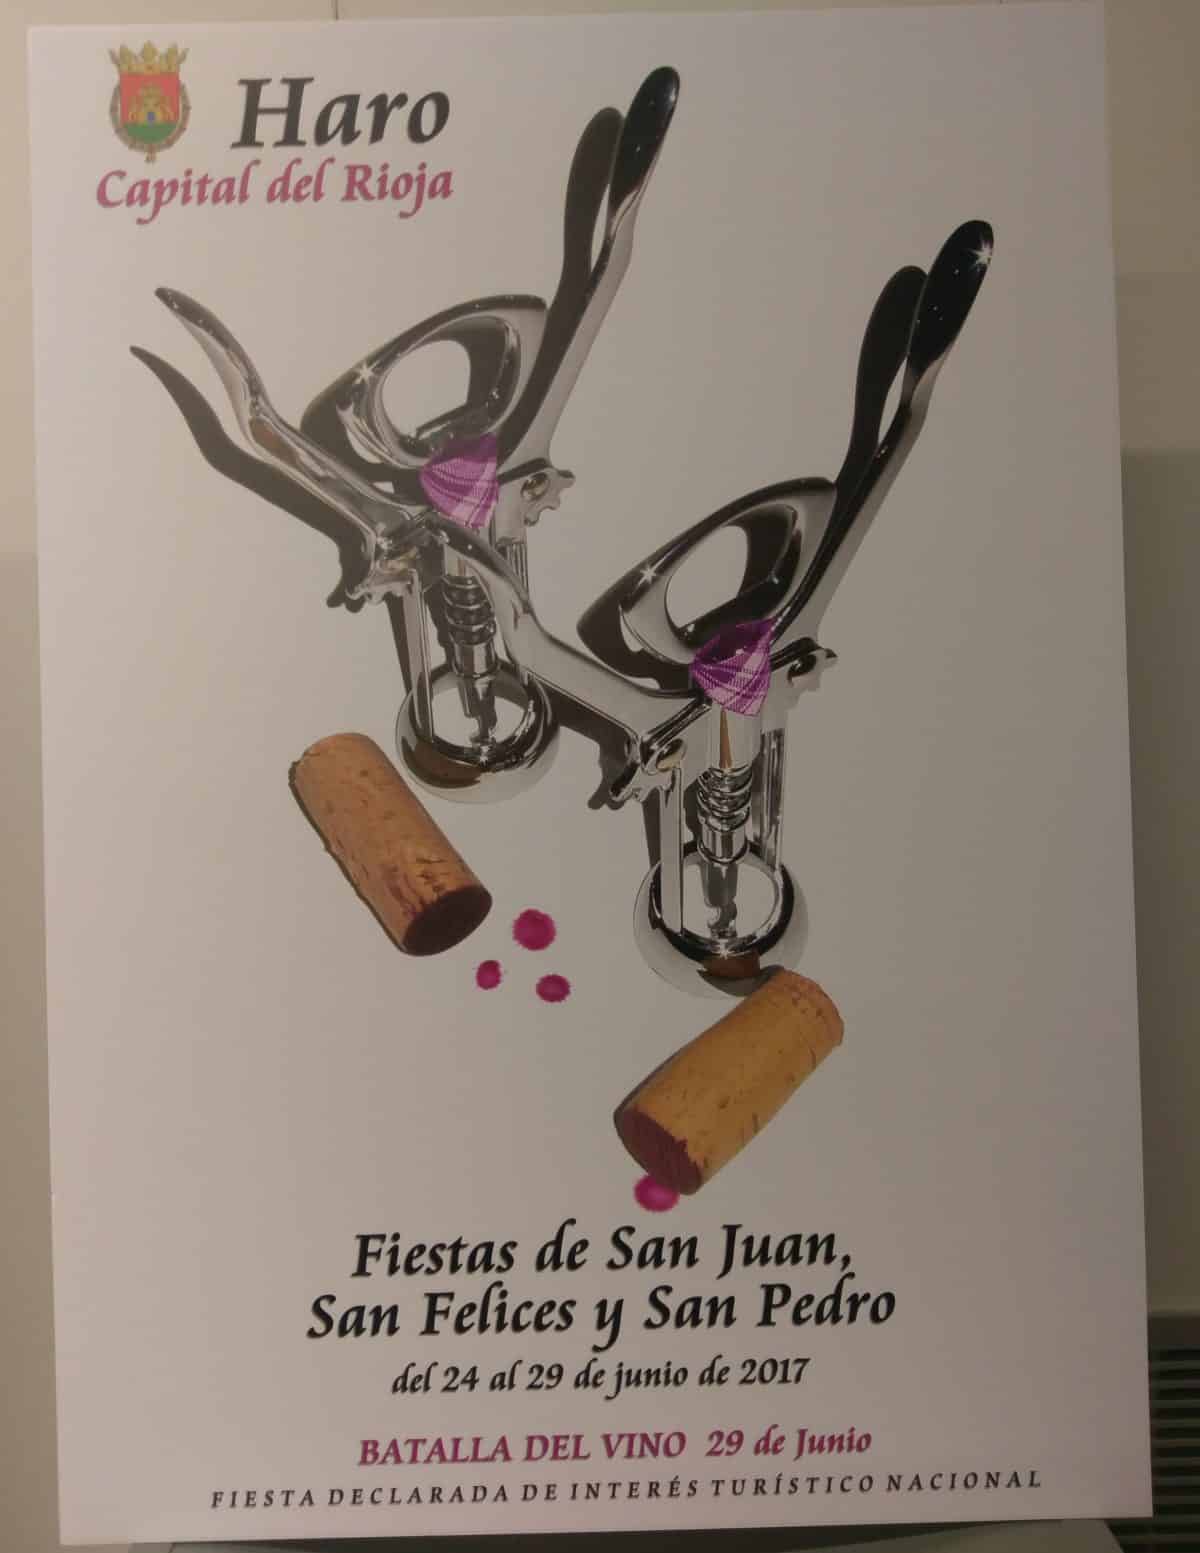 Los cuatro finalistas para ser cartel oficial de las Fiestas de San Juan, San Felices y San Pedro de Haro 4